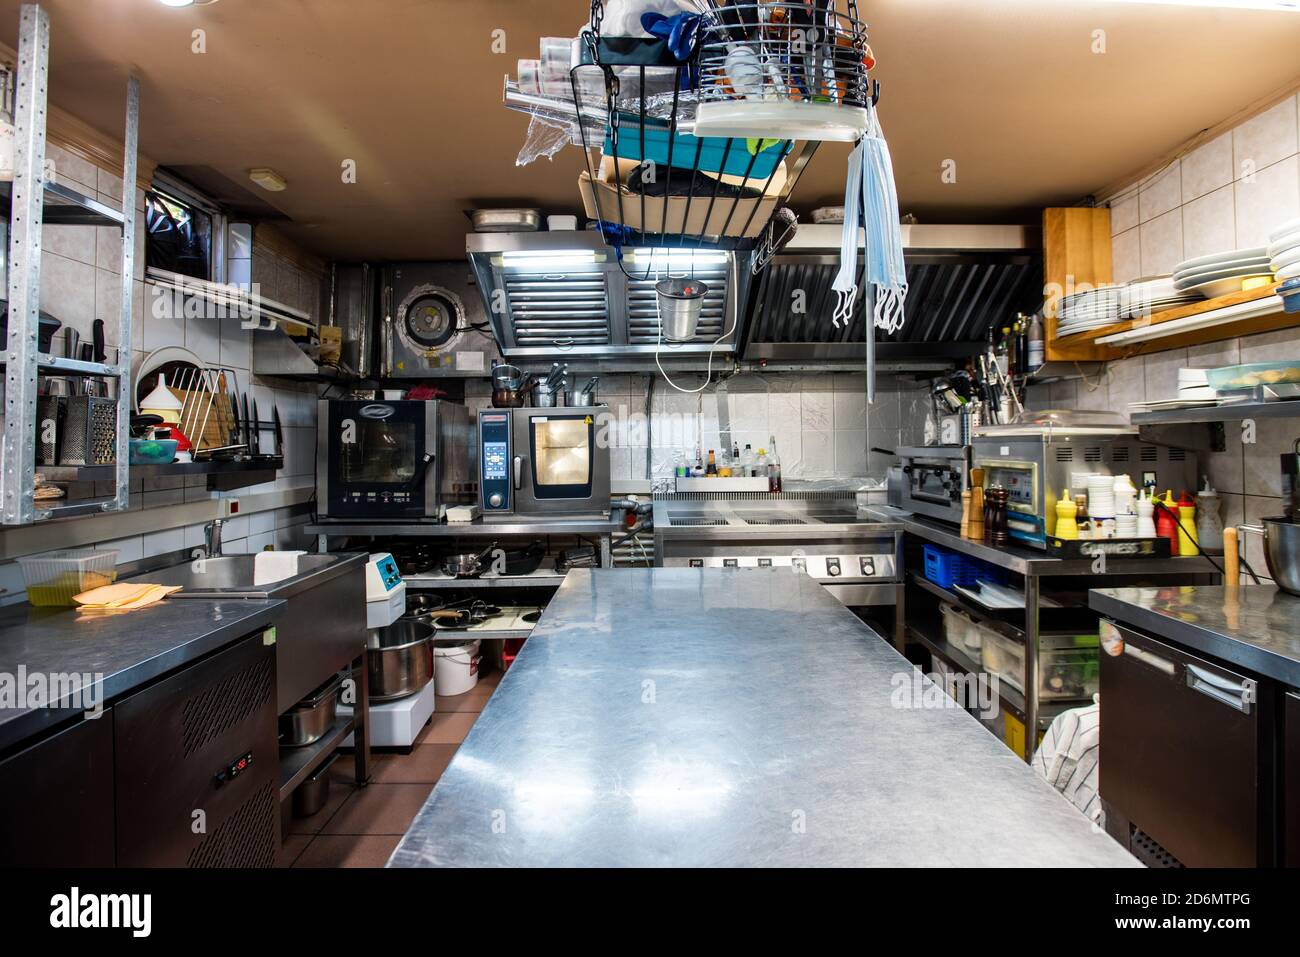 Interieur der großen Küche des modernen luxuriösen Restaurant mit Geschirr Stockfoto